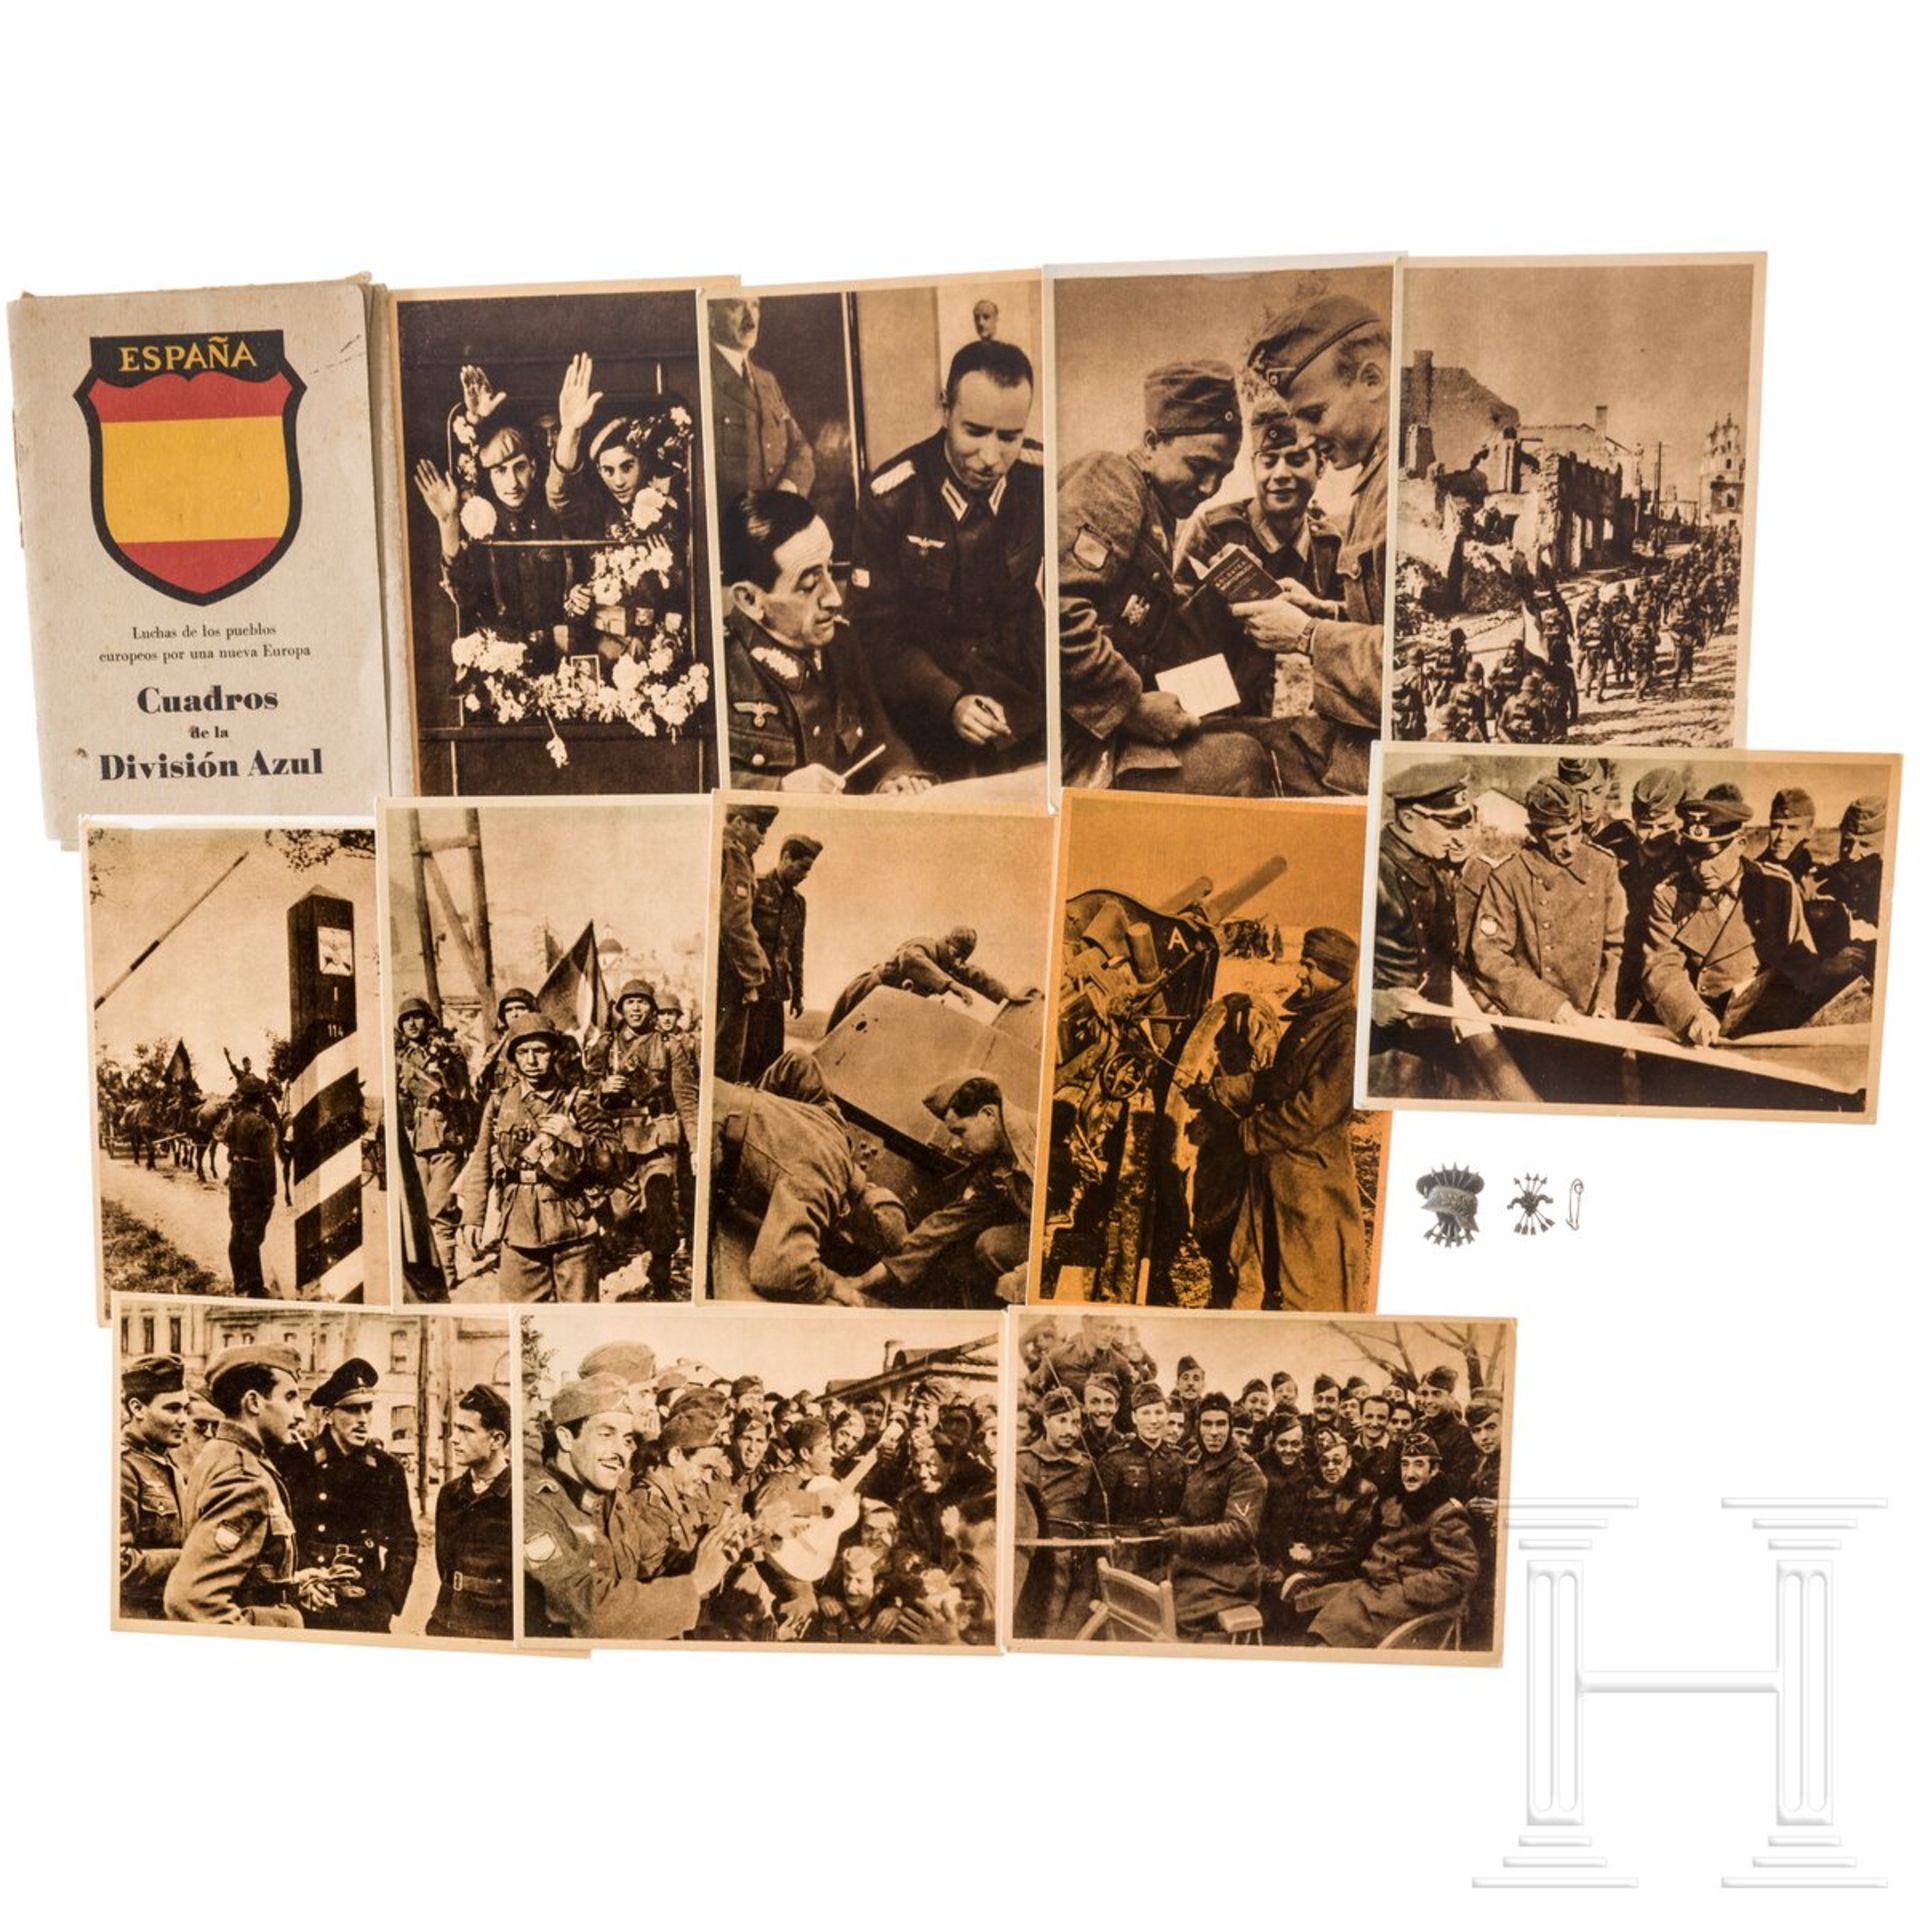 Postkartenserie  "Luchas de los pueblos europeos por una nueve Europa"